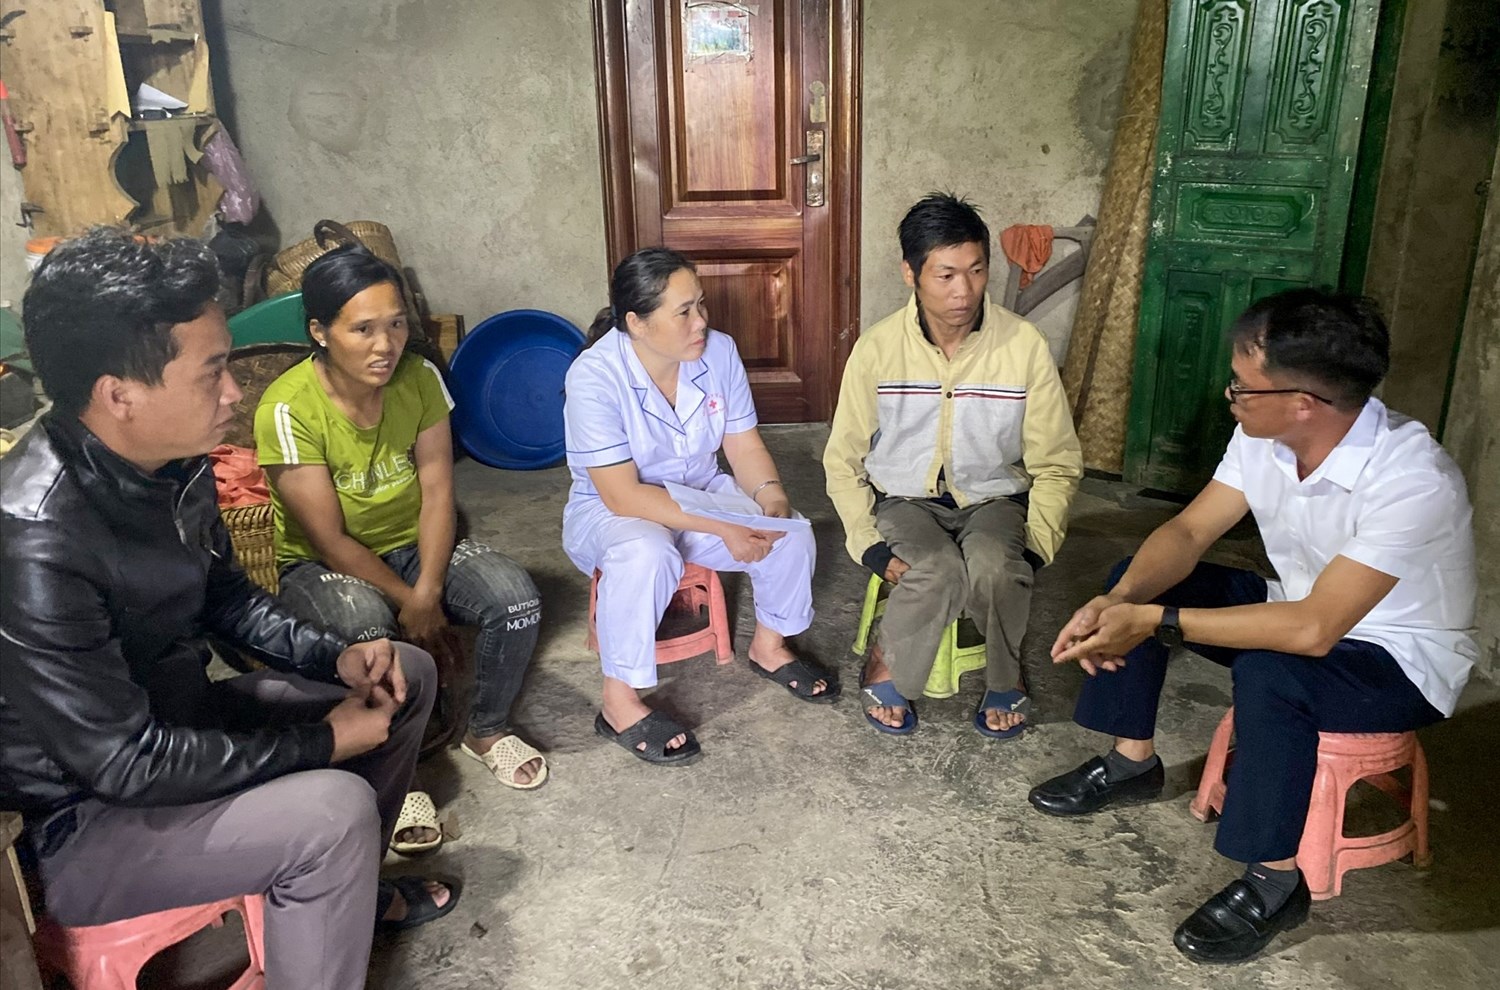 Cán bộ xã, Trạm Y tế xã Mồ Sì San, huyện Phong Thổ (tỉnh Lai Châu) thường xuyên xuống các gia đình tuyên truyền, vận động phụ nữ có thai nên đến các cơ sở y tế thăm khám